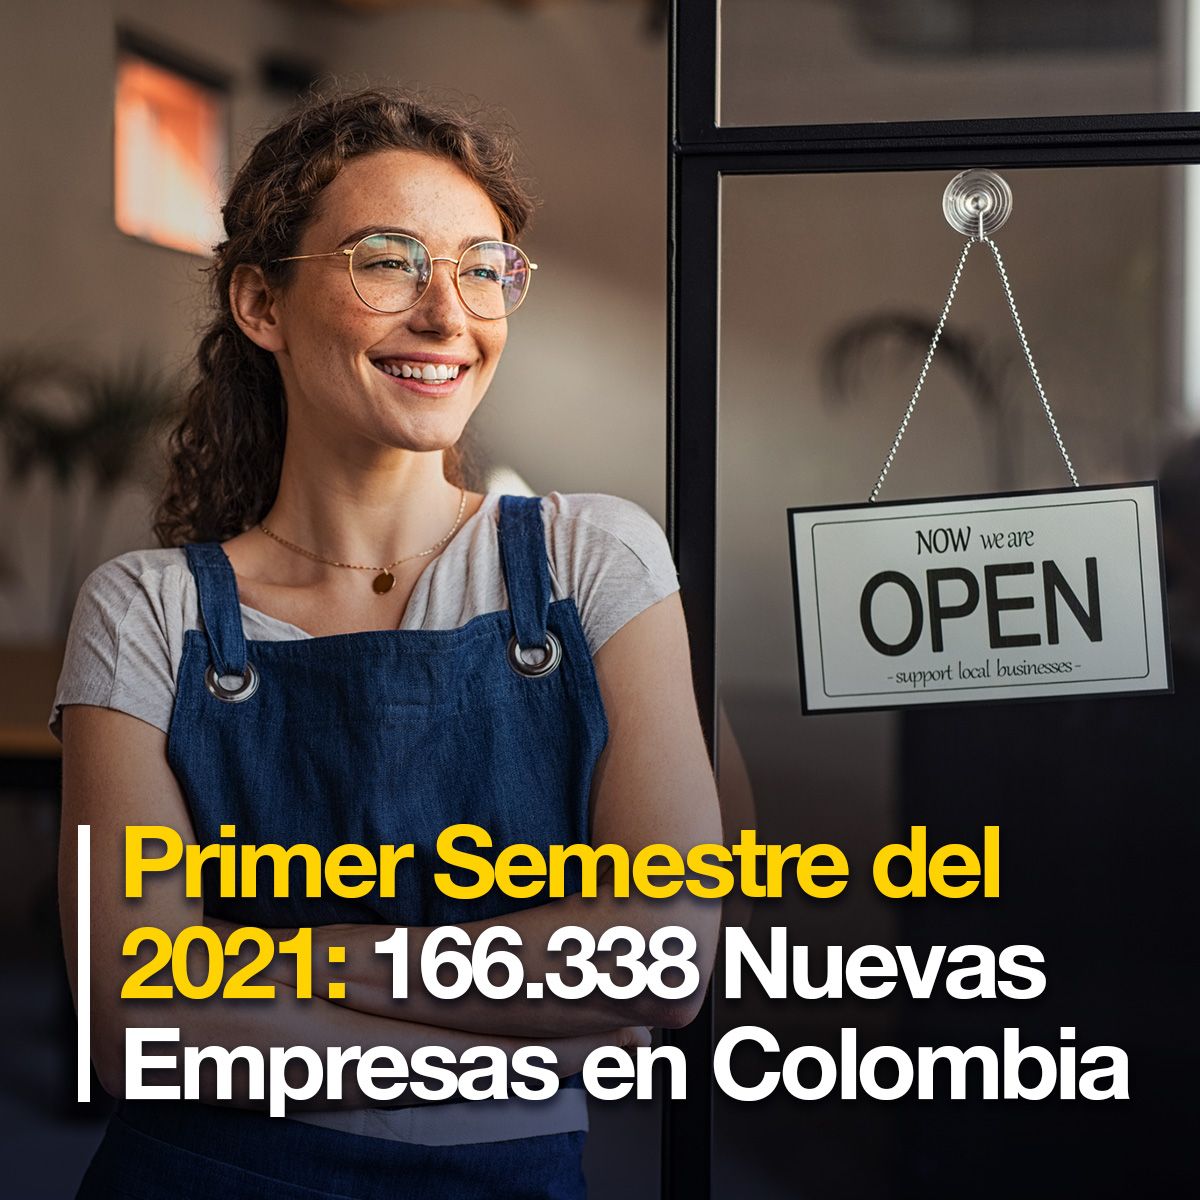 Primer Semestre del 2021: 166.338 Nuevas Empresas en Colombia